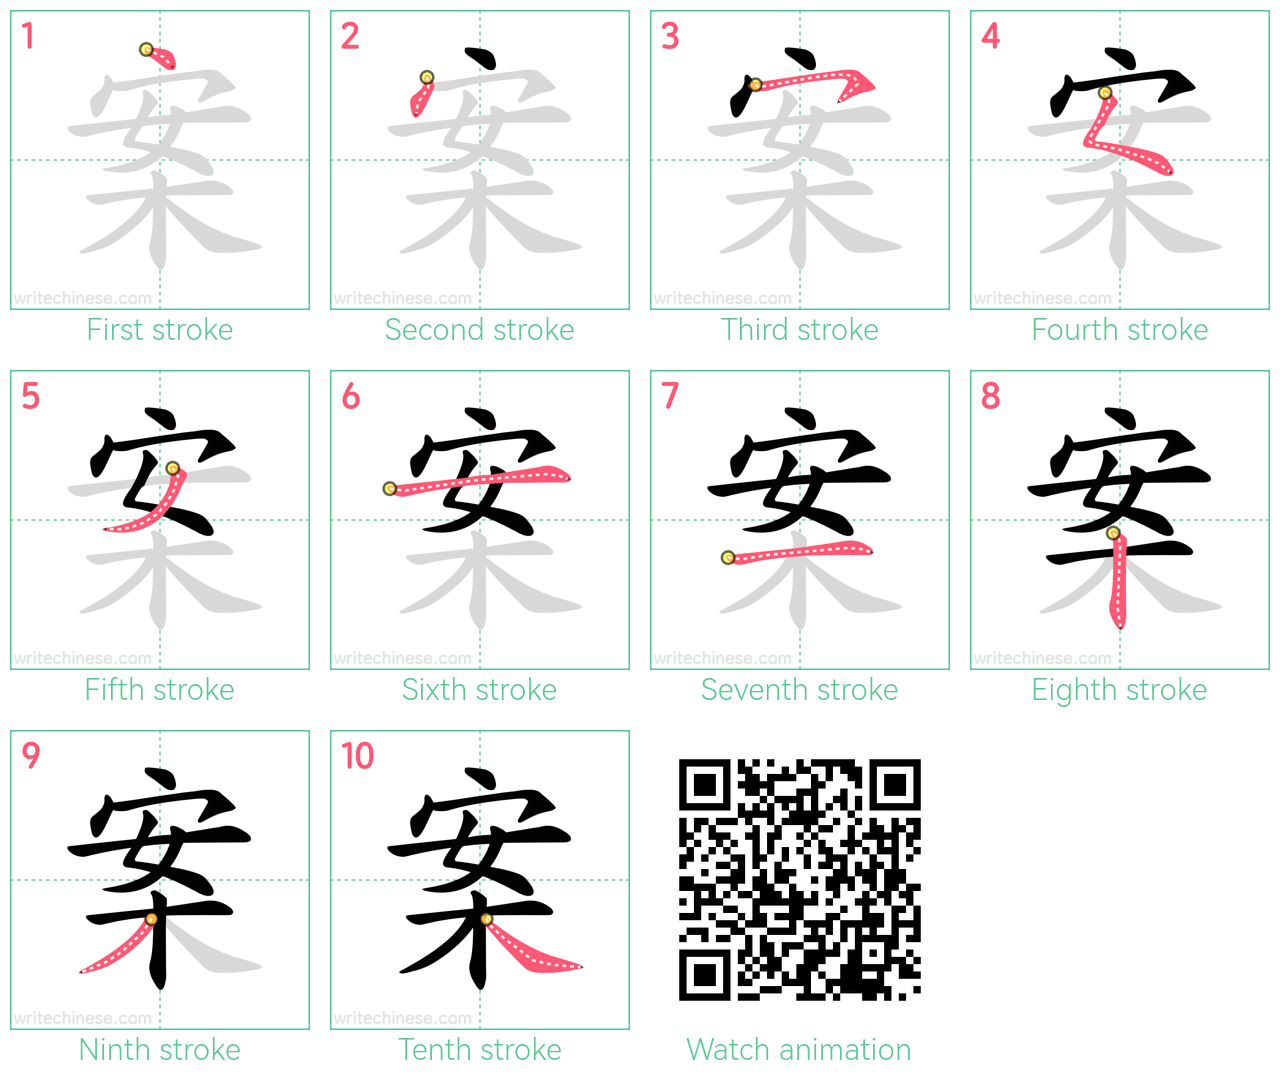 案 step-by-step stroke order diagrams